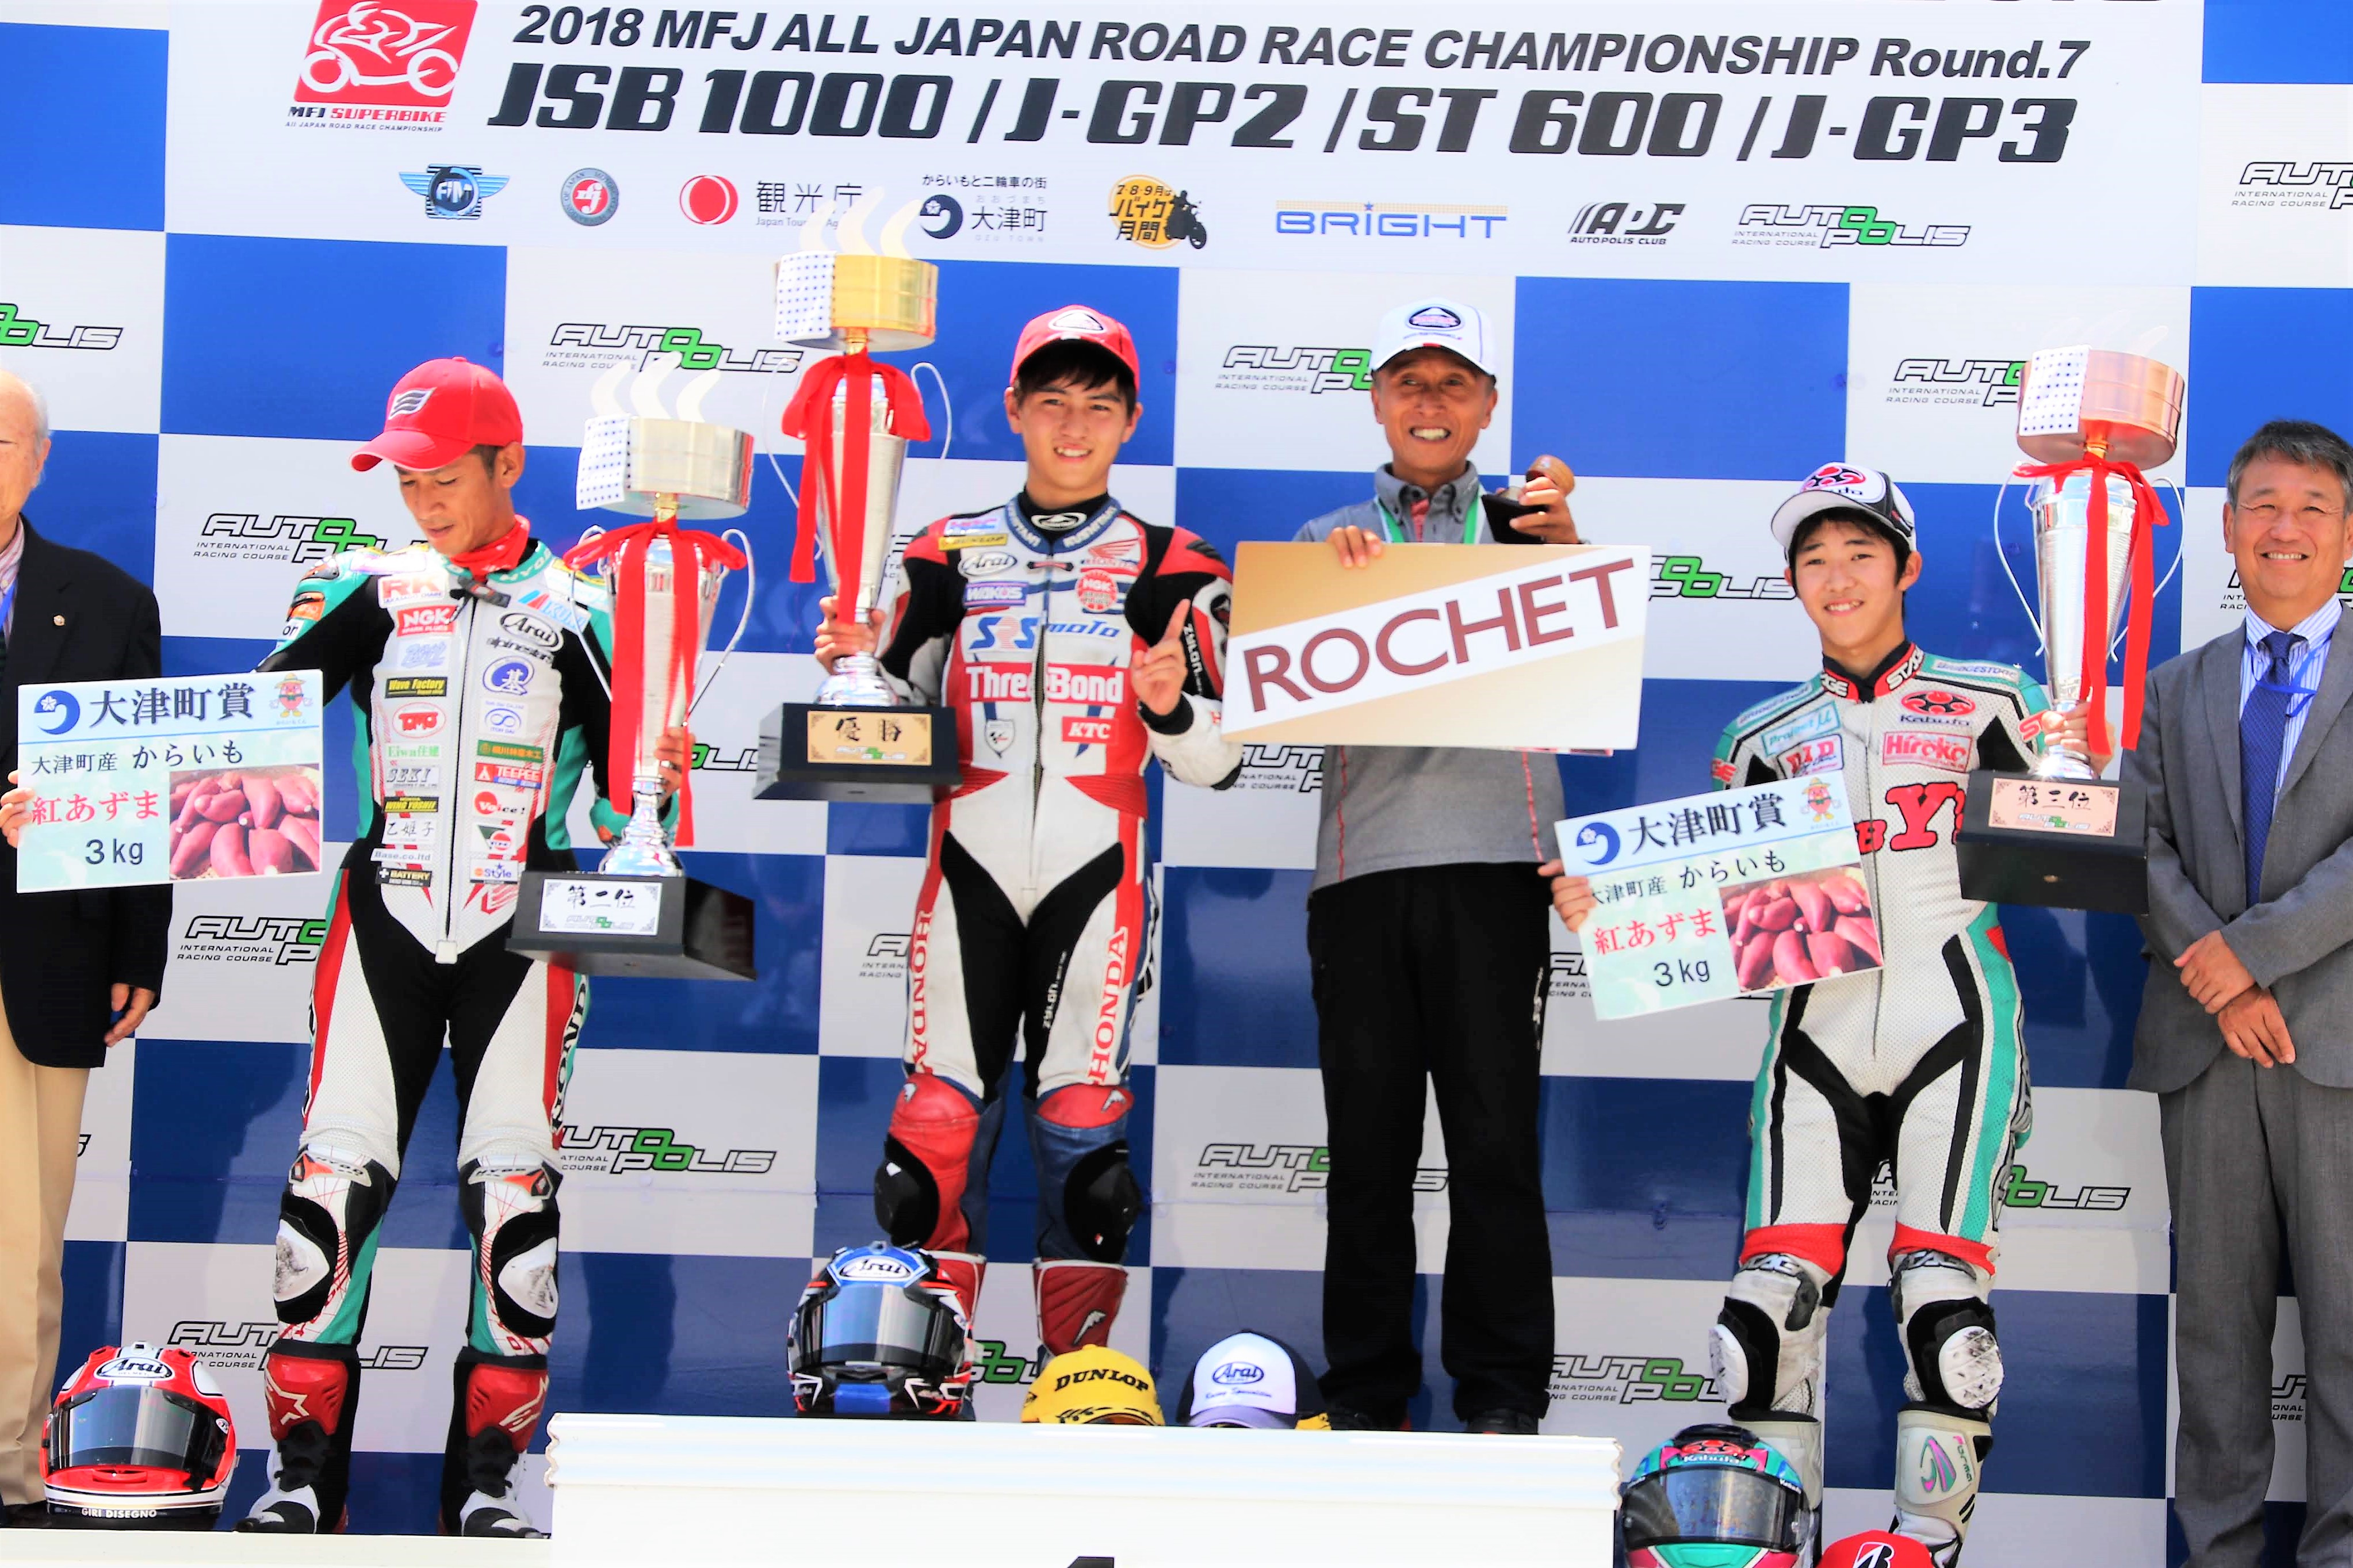 全日本ロードレース選手権Rd.7 決勝レポート